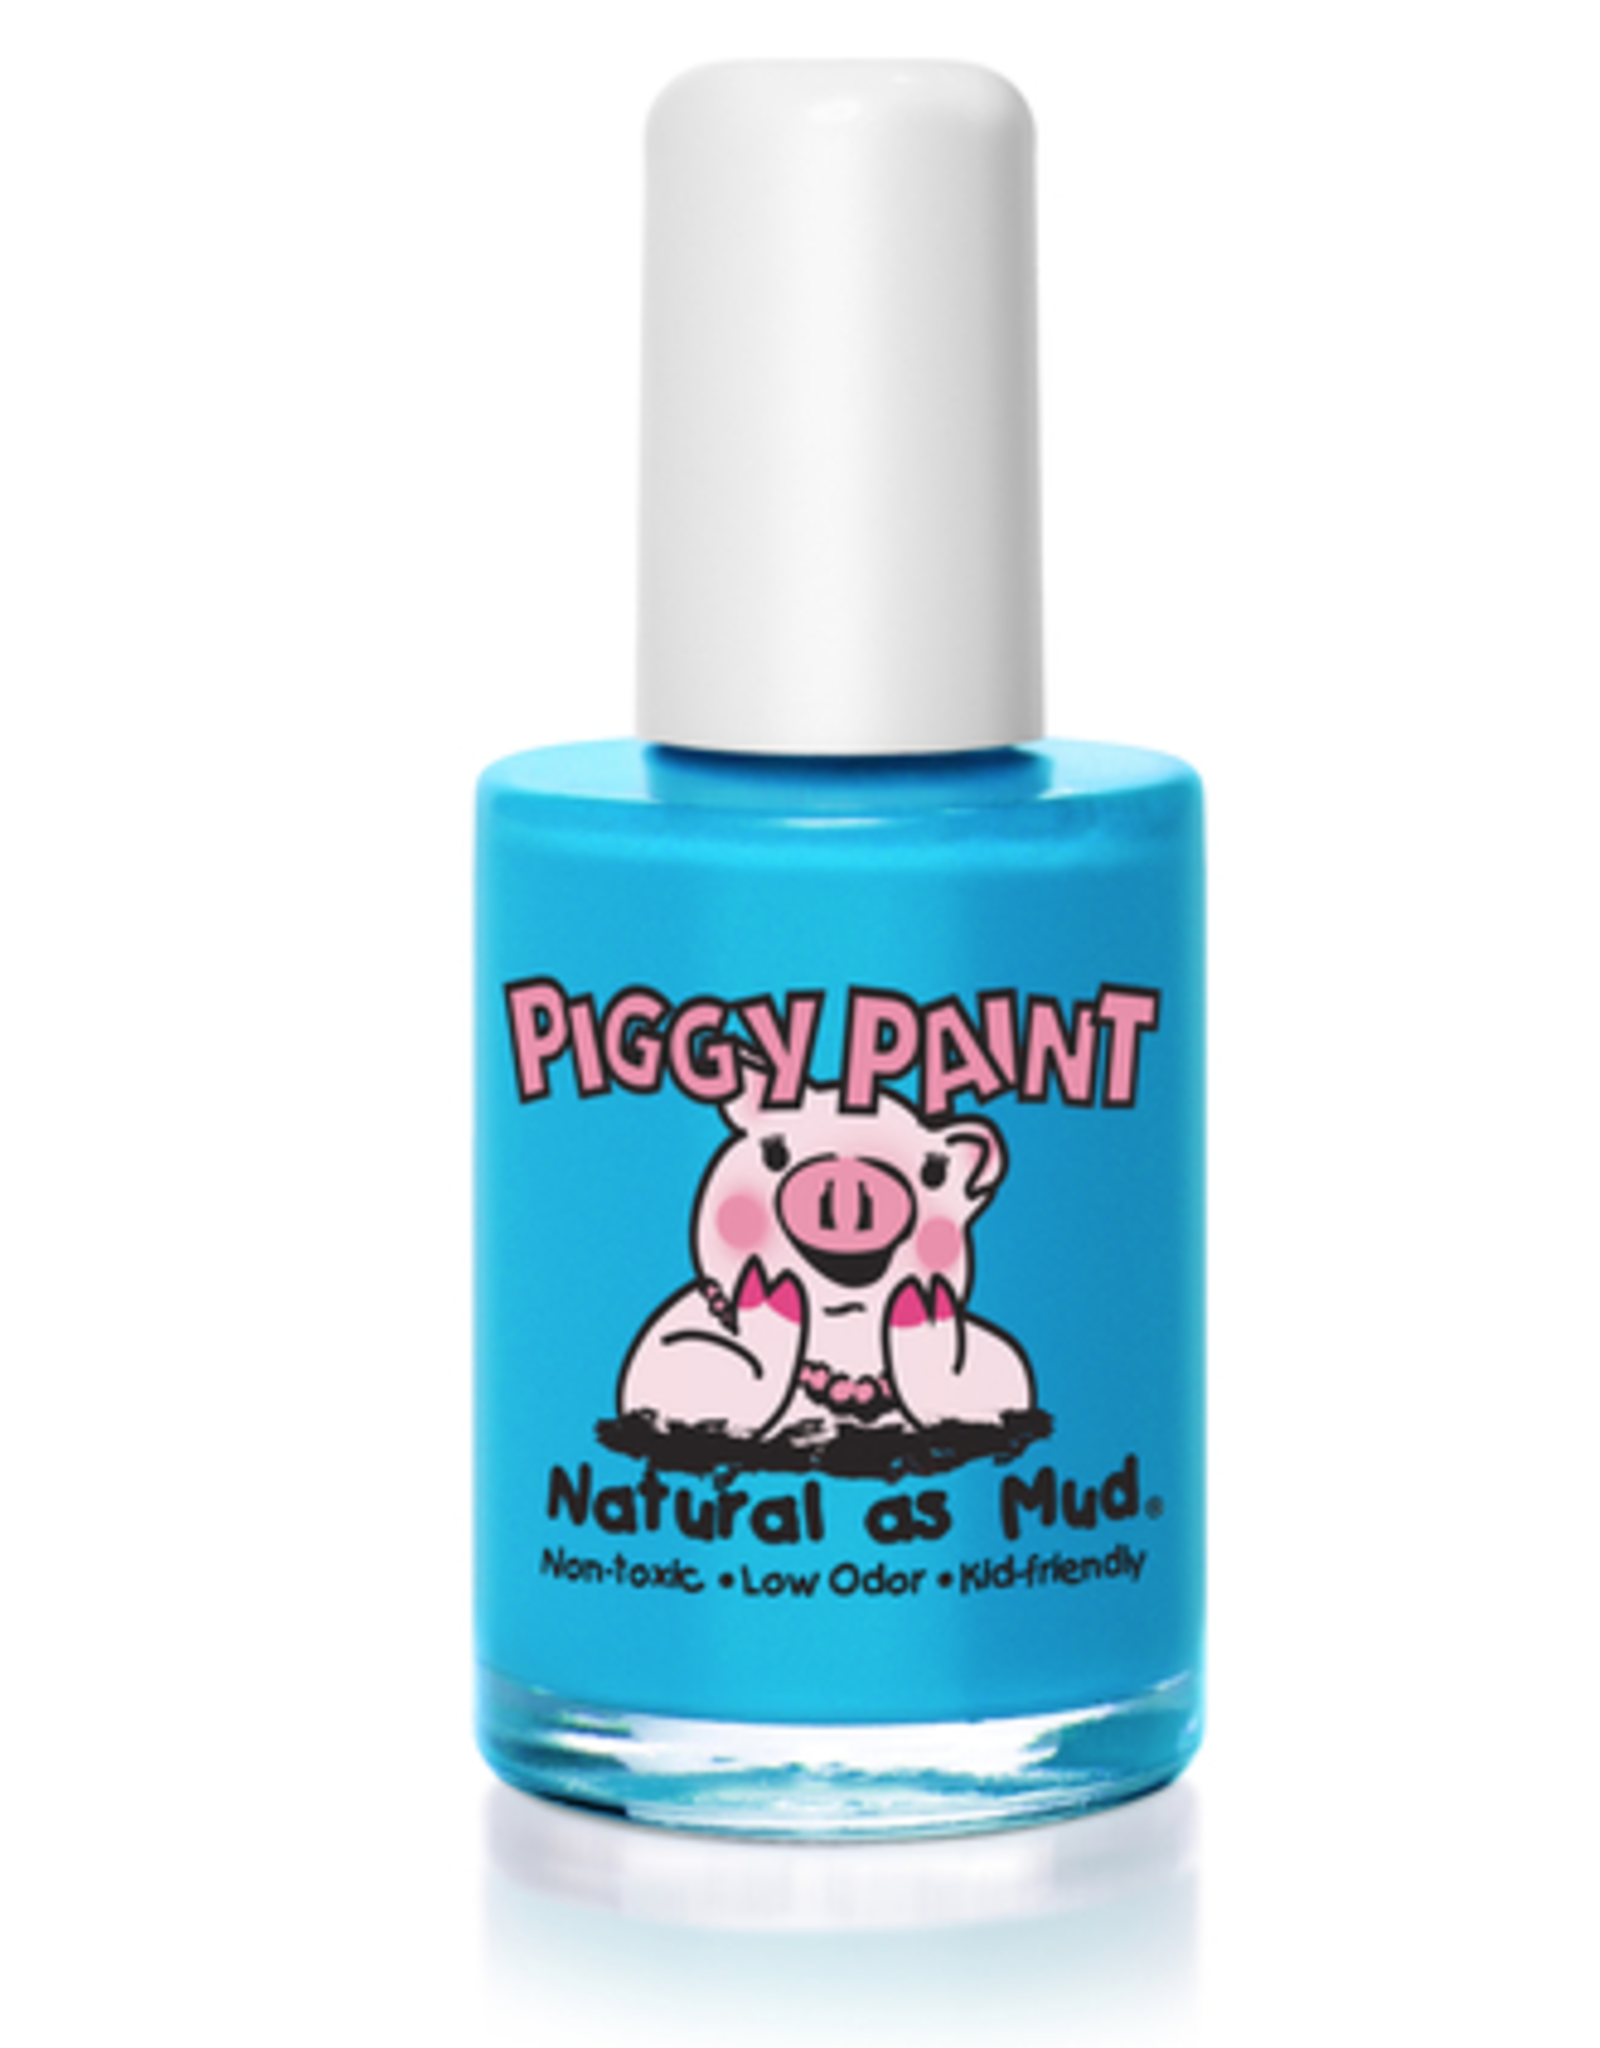 Piggy Paint Piggy Paint, RAIN-bow or Shine